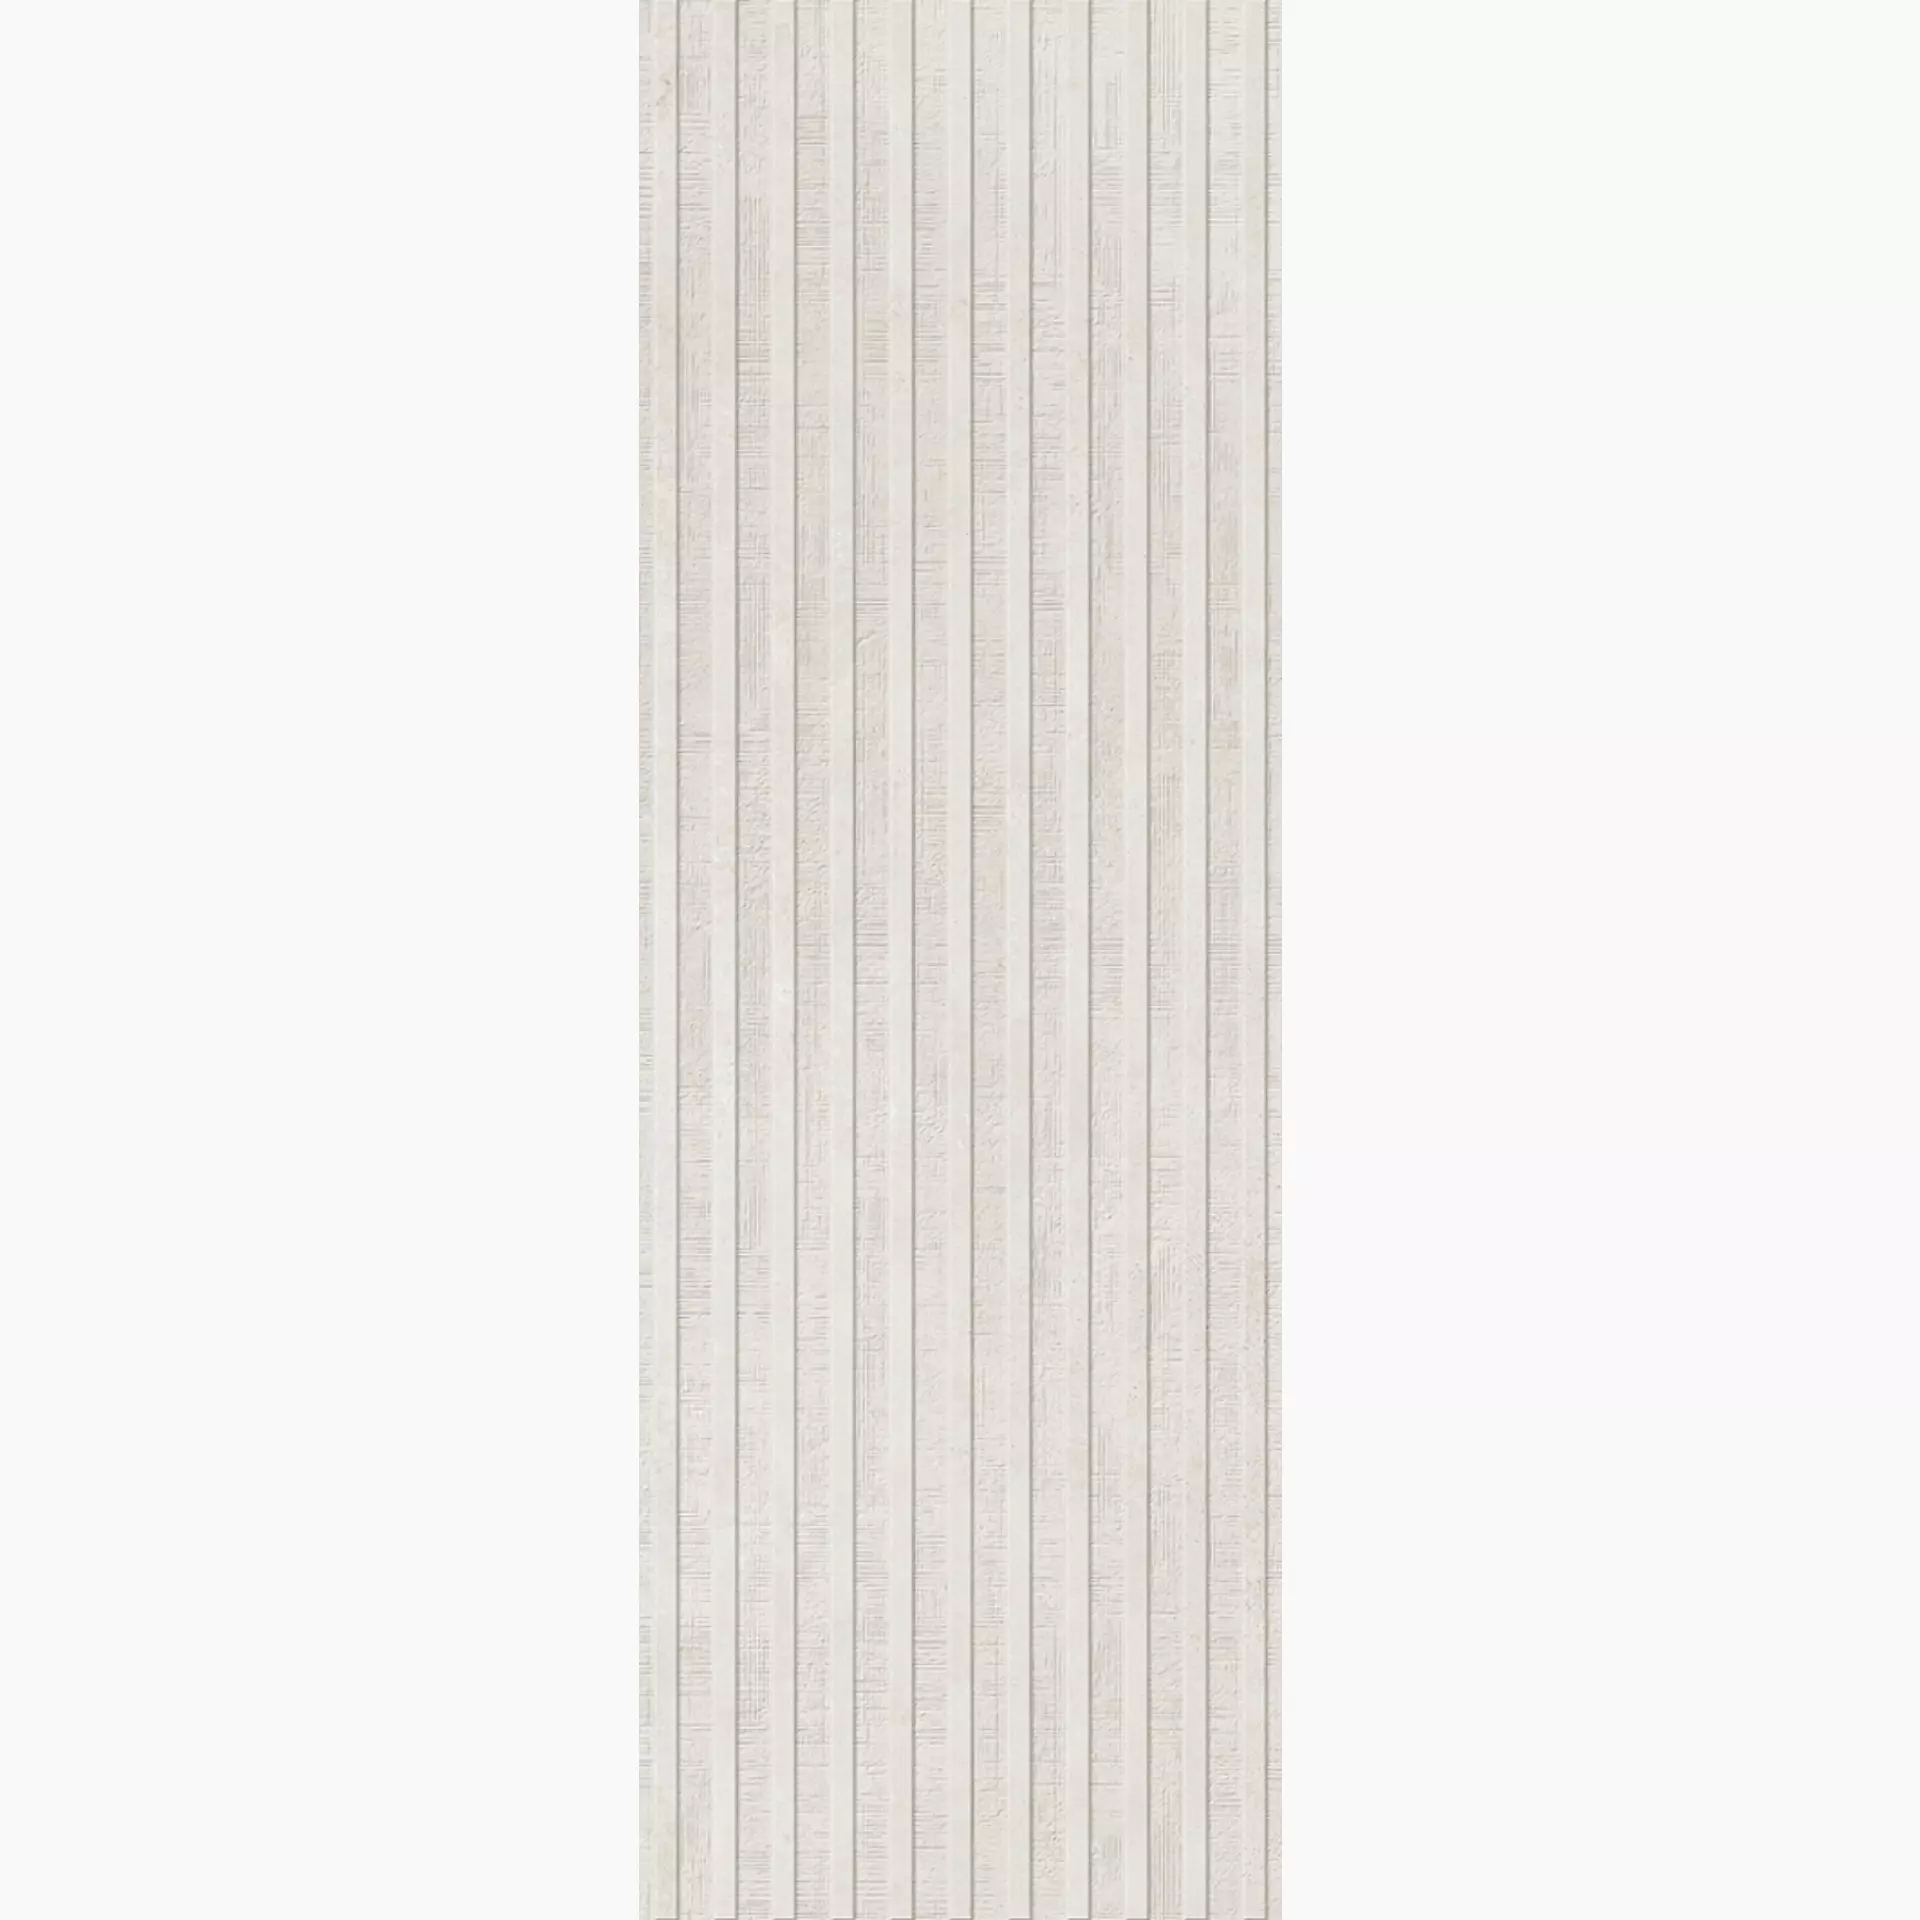 Villeroy & Boch Ombra White Struttura Matt Decor Relief 1310-IA11 struttura matt 30x90cm rectified 10mm